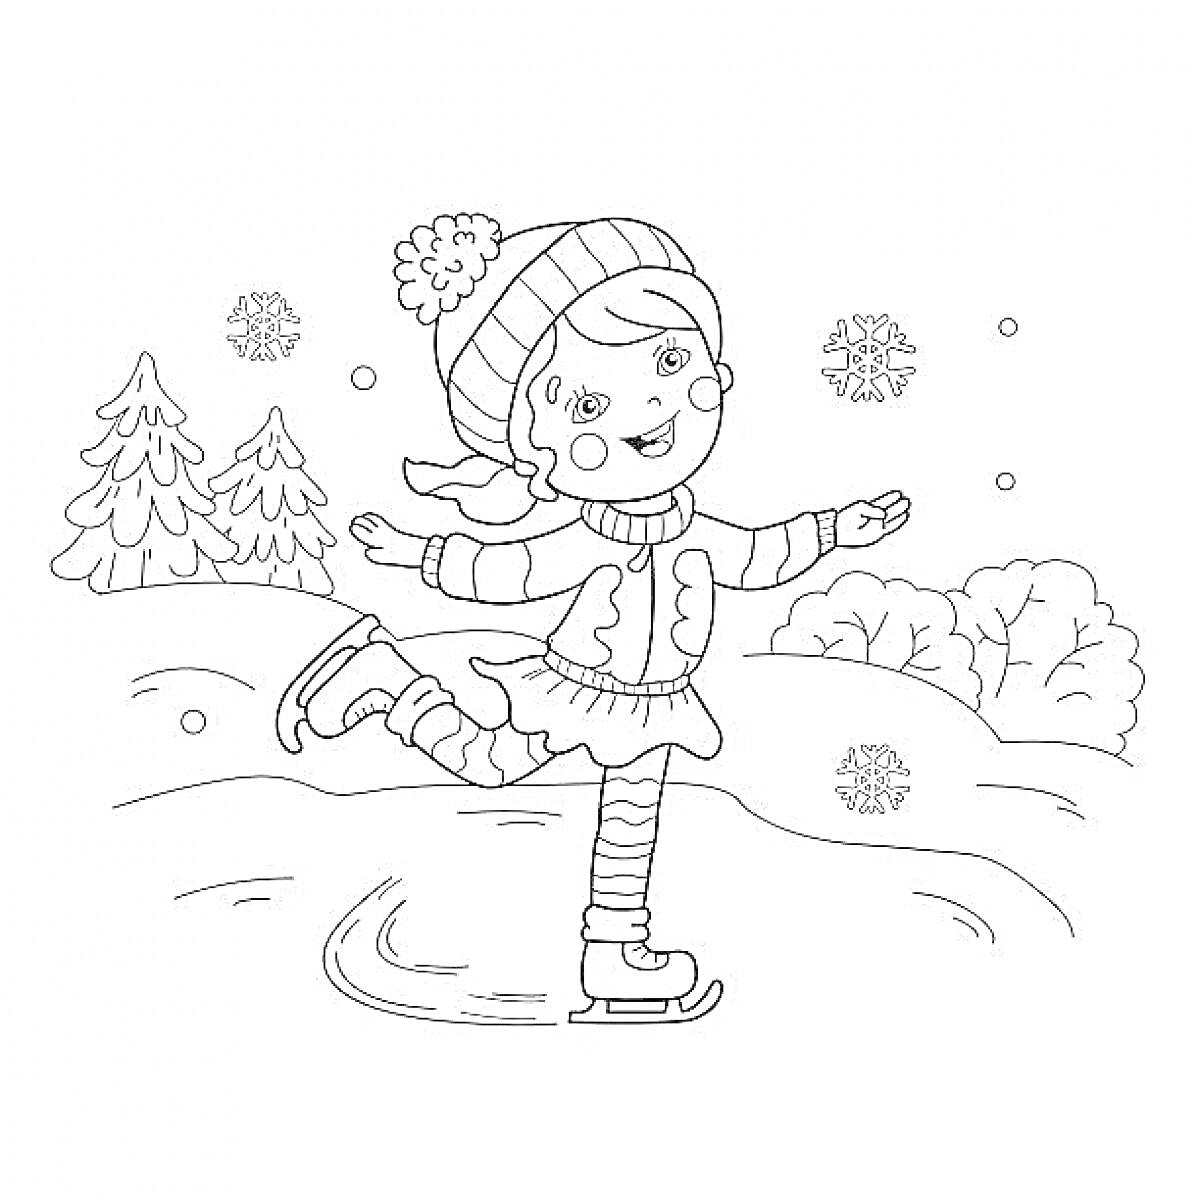 Раскраска Девочка на коньках в зимнем пейзаже с елками и снежинками